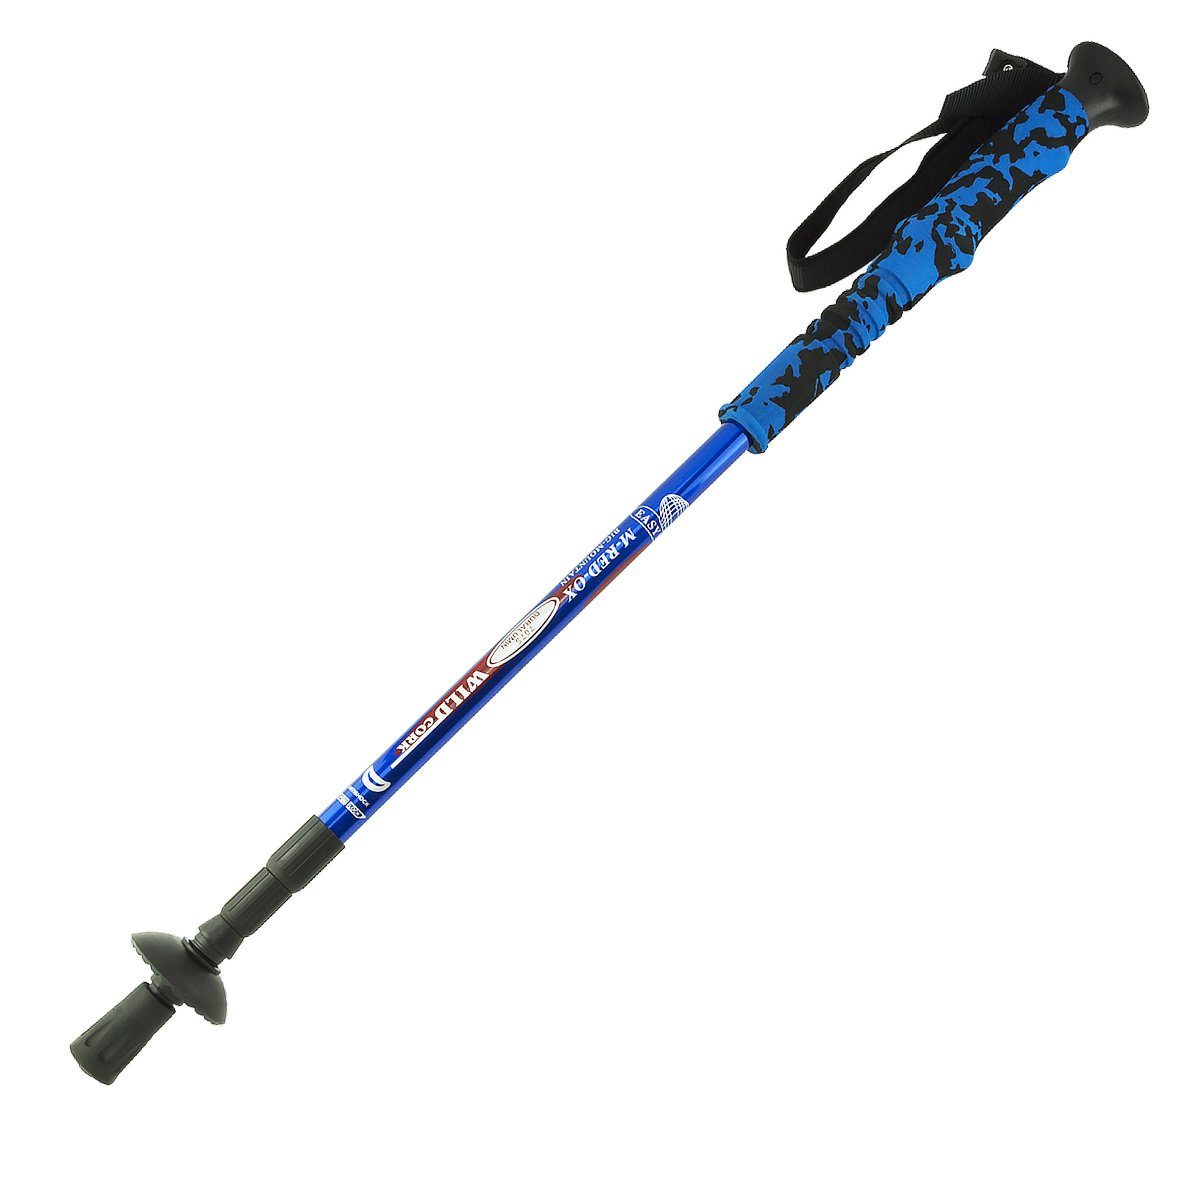 MidGard Nordic-Walking-Stöcke 65-134cm höhenverstellbar, Antischock Dämpfung, Wanderstöcke (1 St) Blau